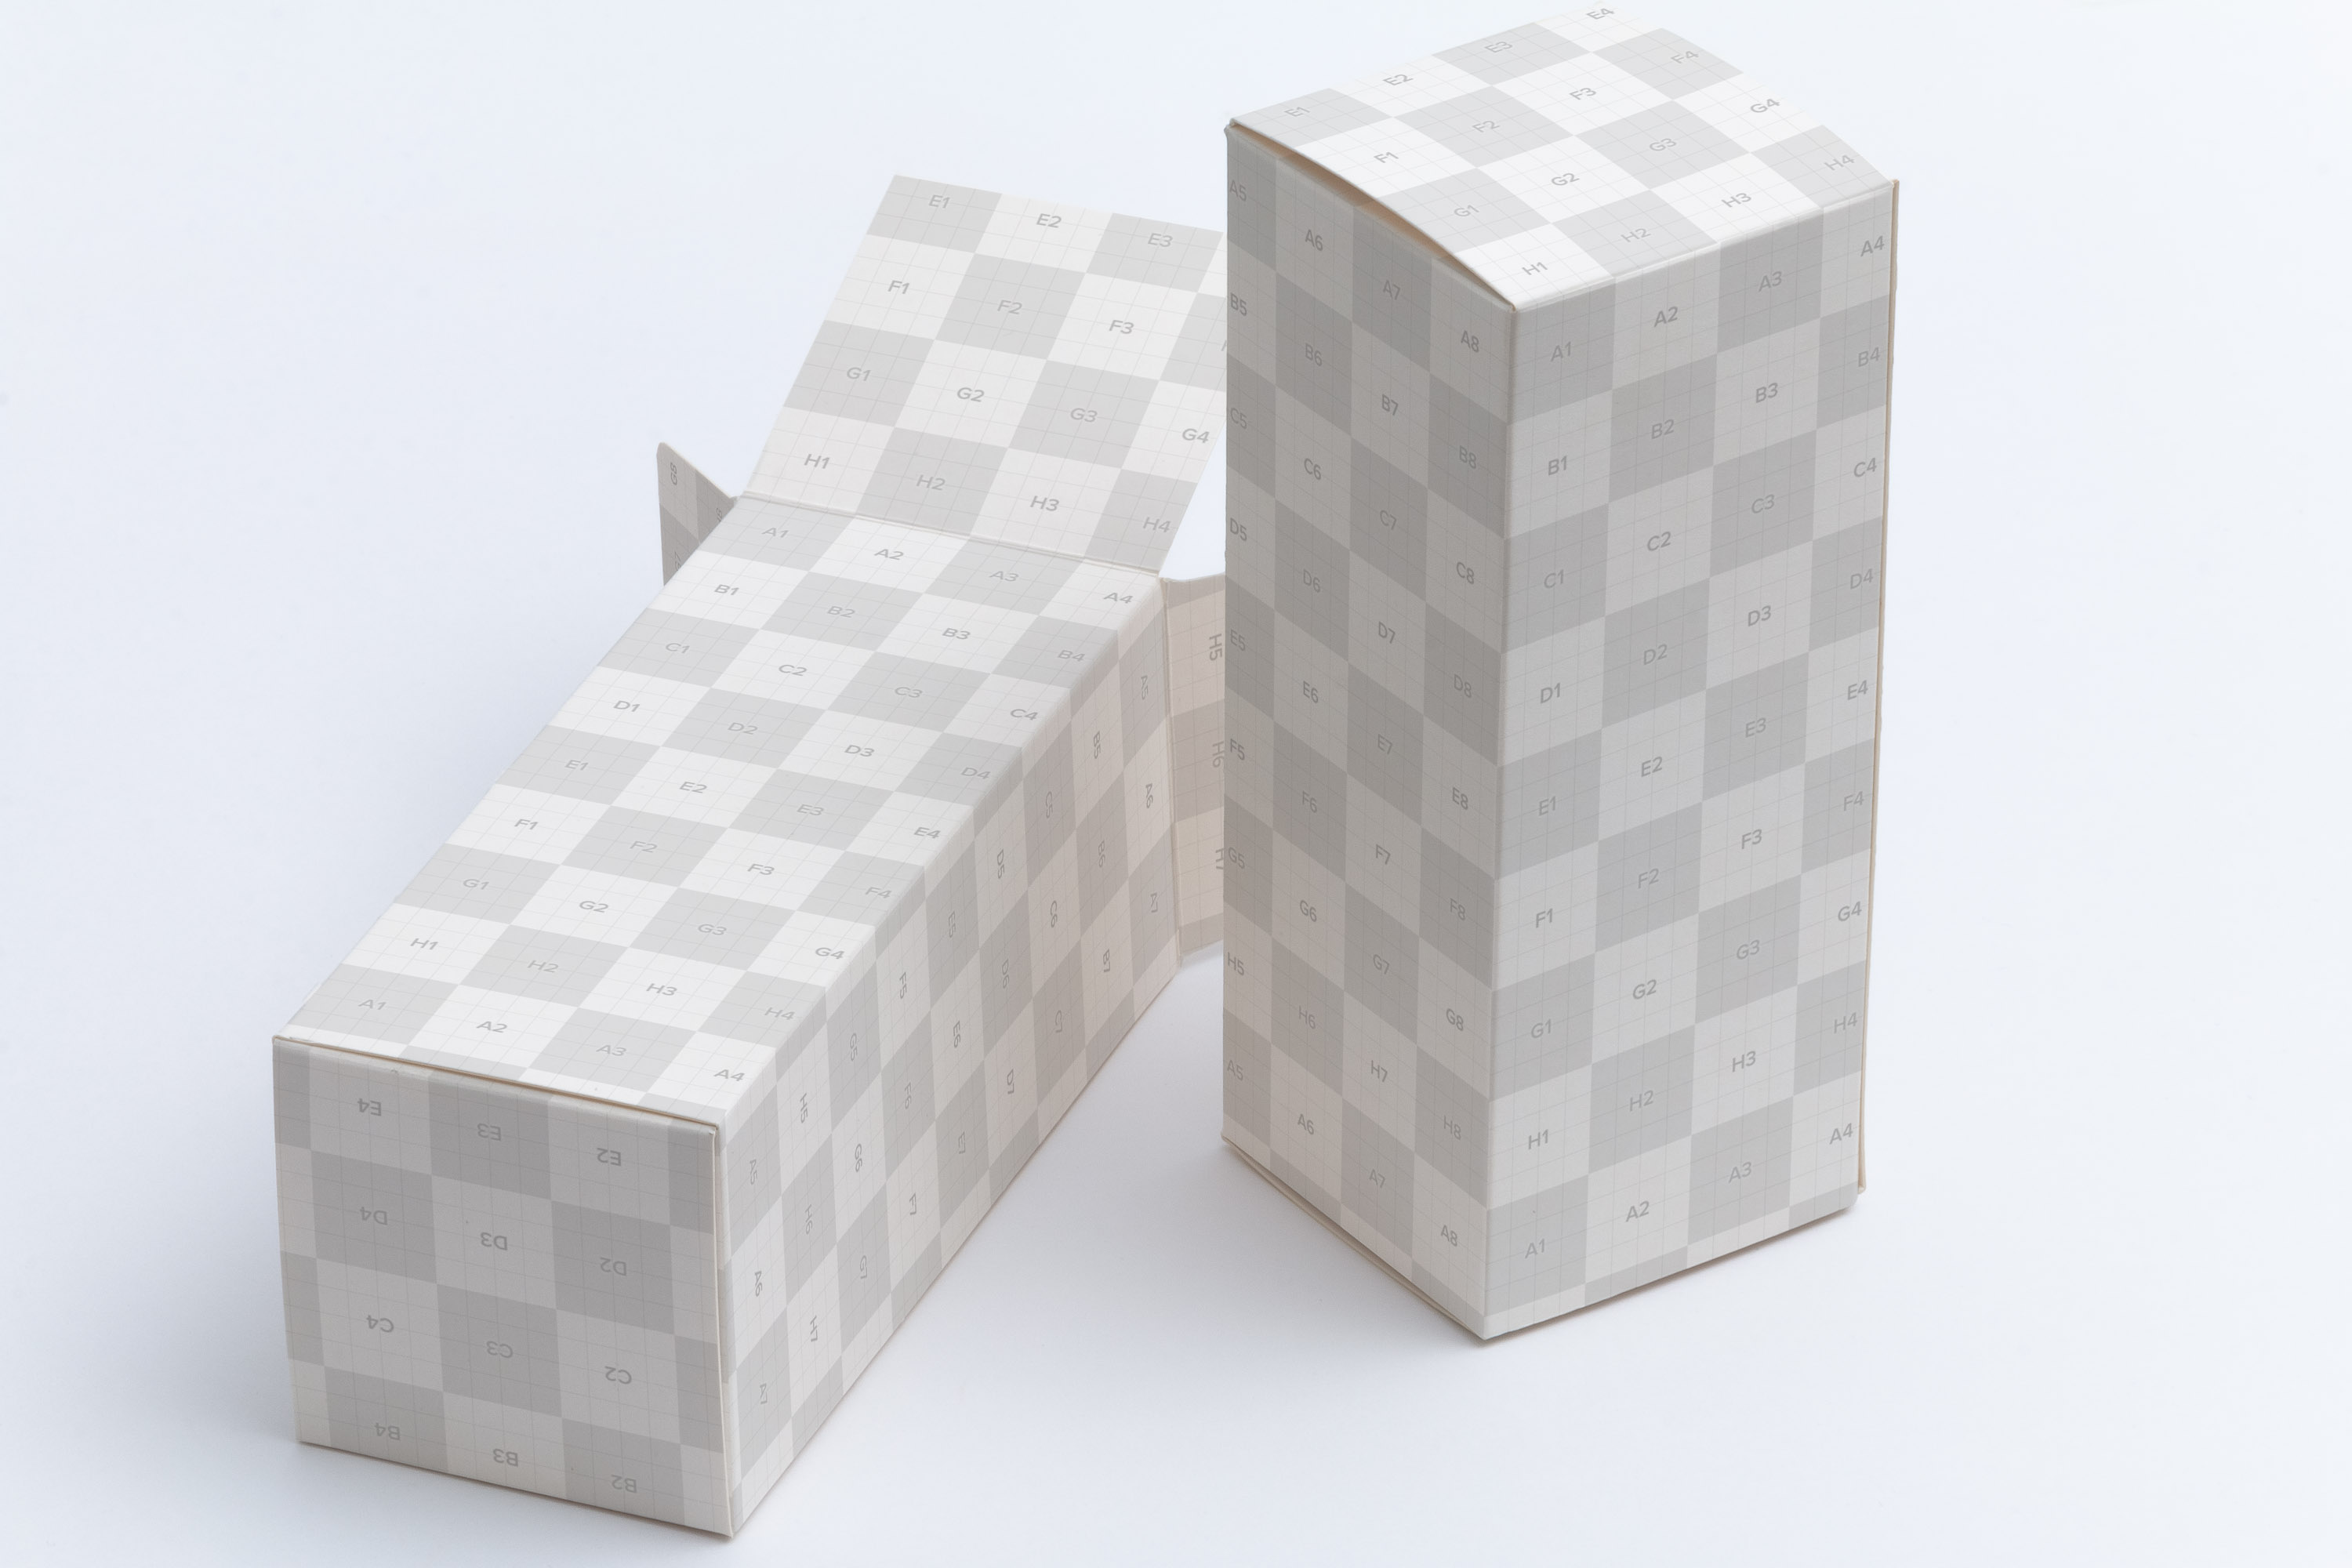 长方体产品包装盒设计效果图样机模板02 Tall Gift Box Mockup 02插图(2)